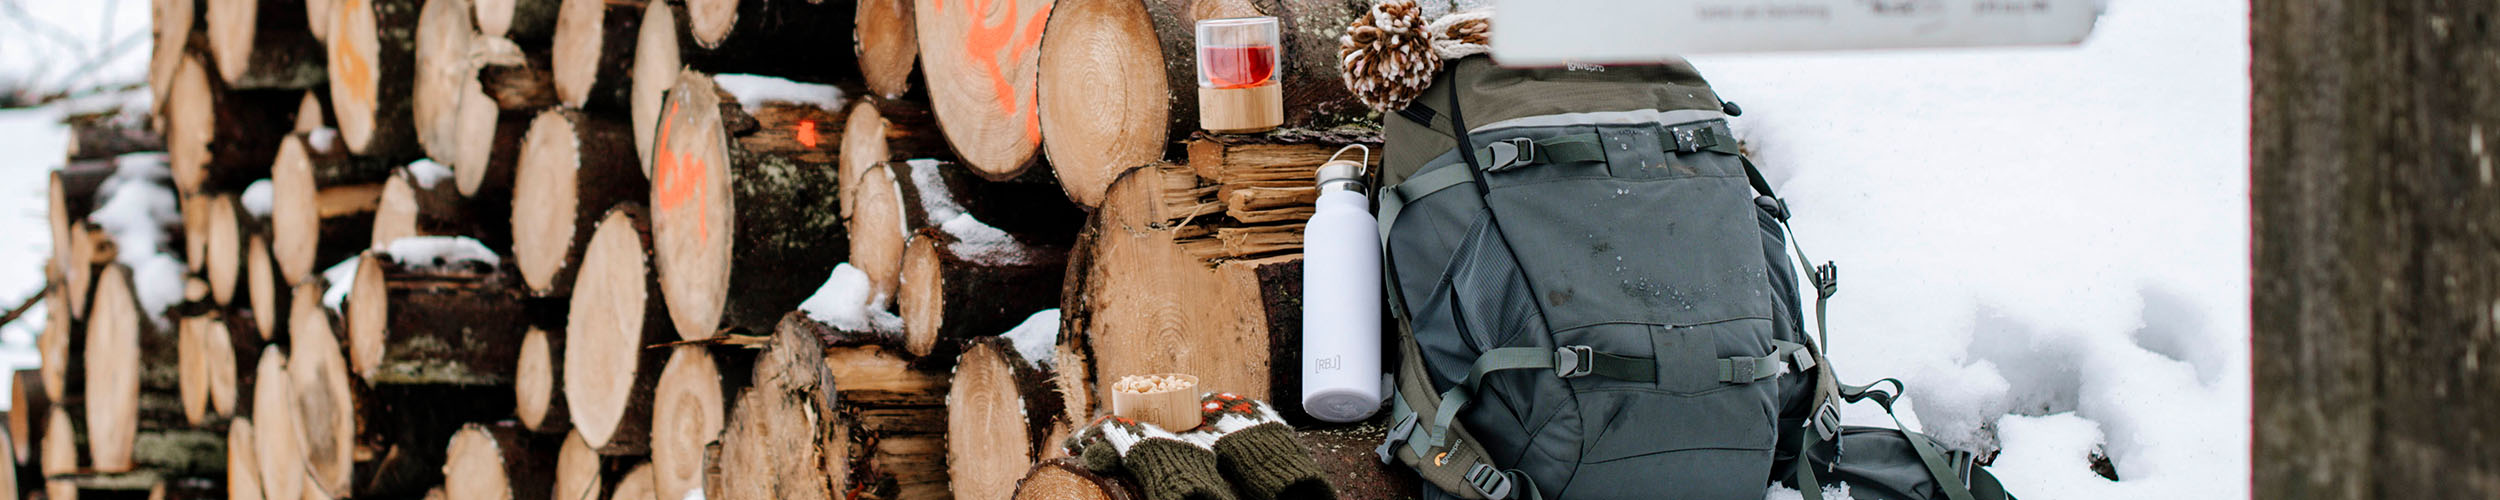 Holzstapel mit Thermosflasche, Rucksack und Teeglas